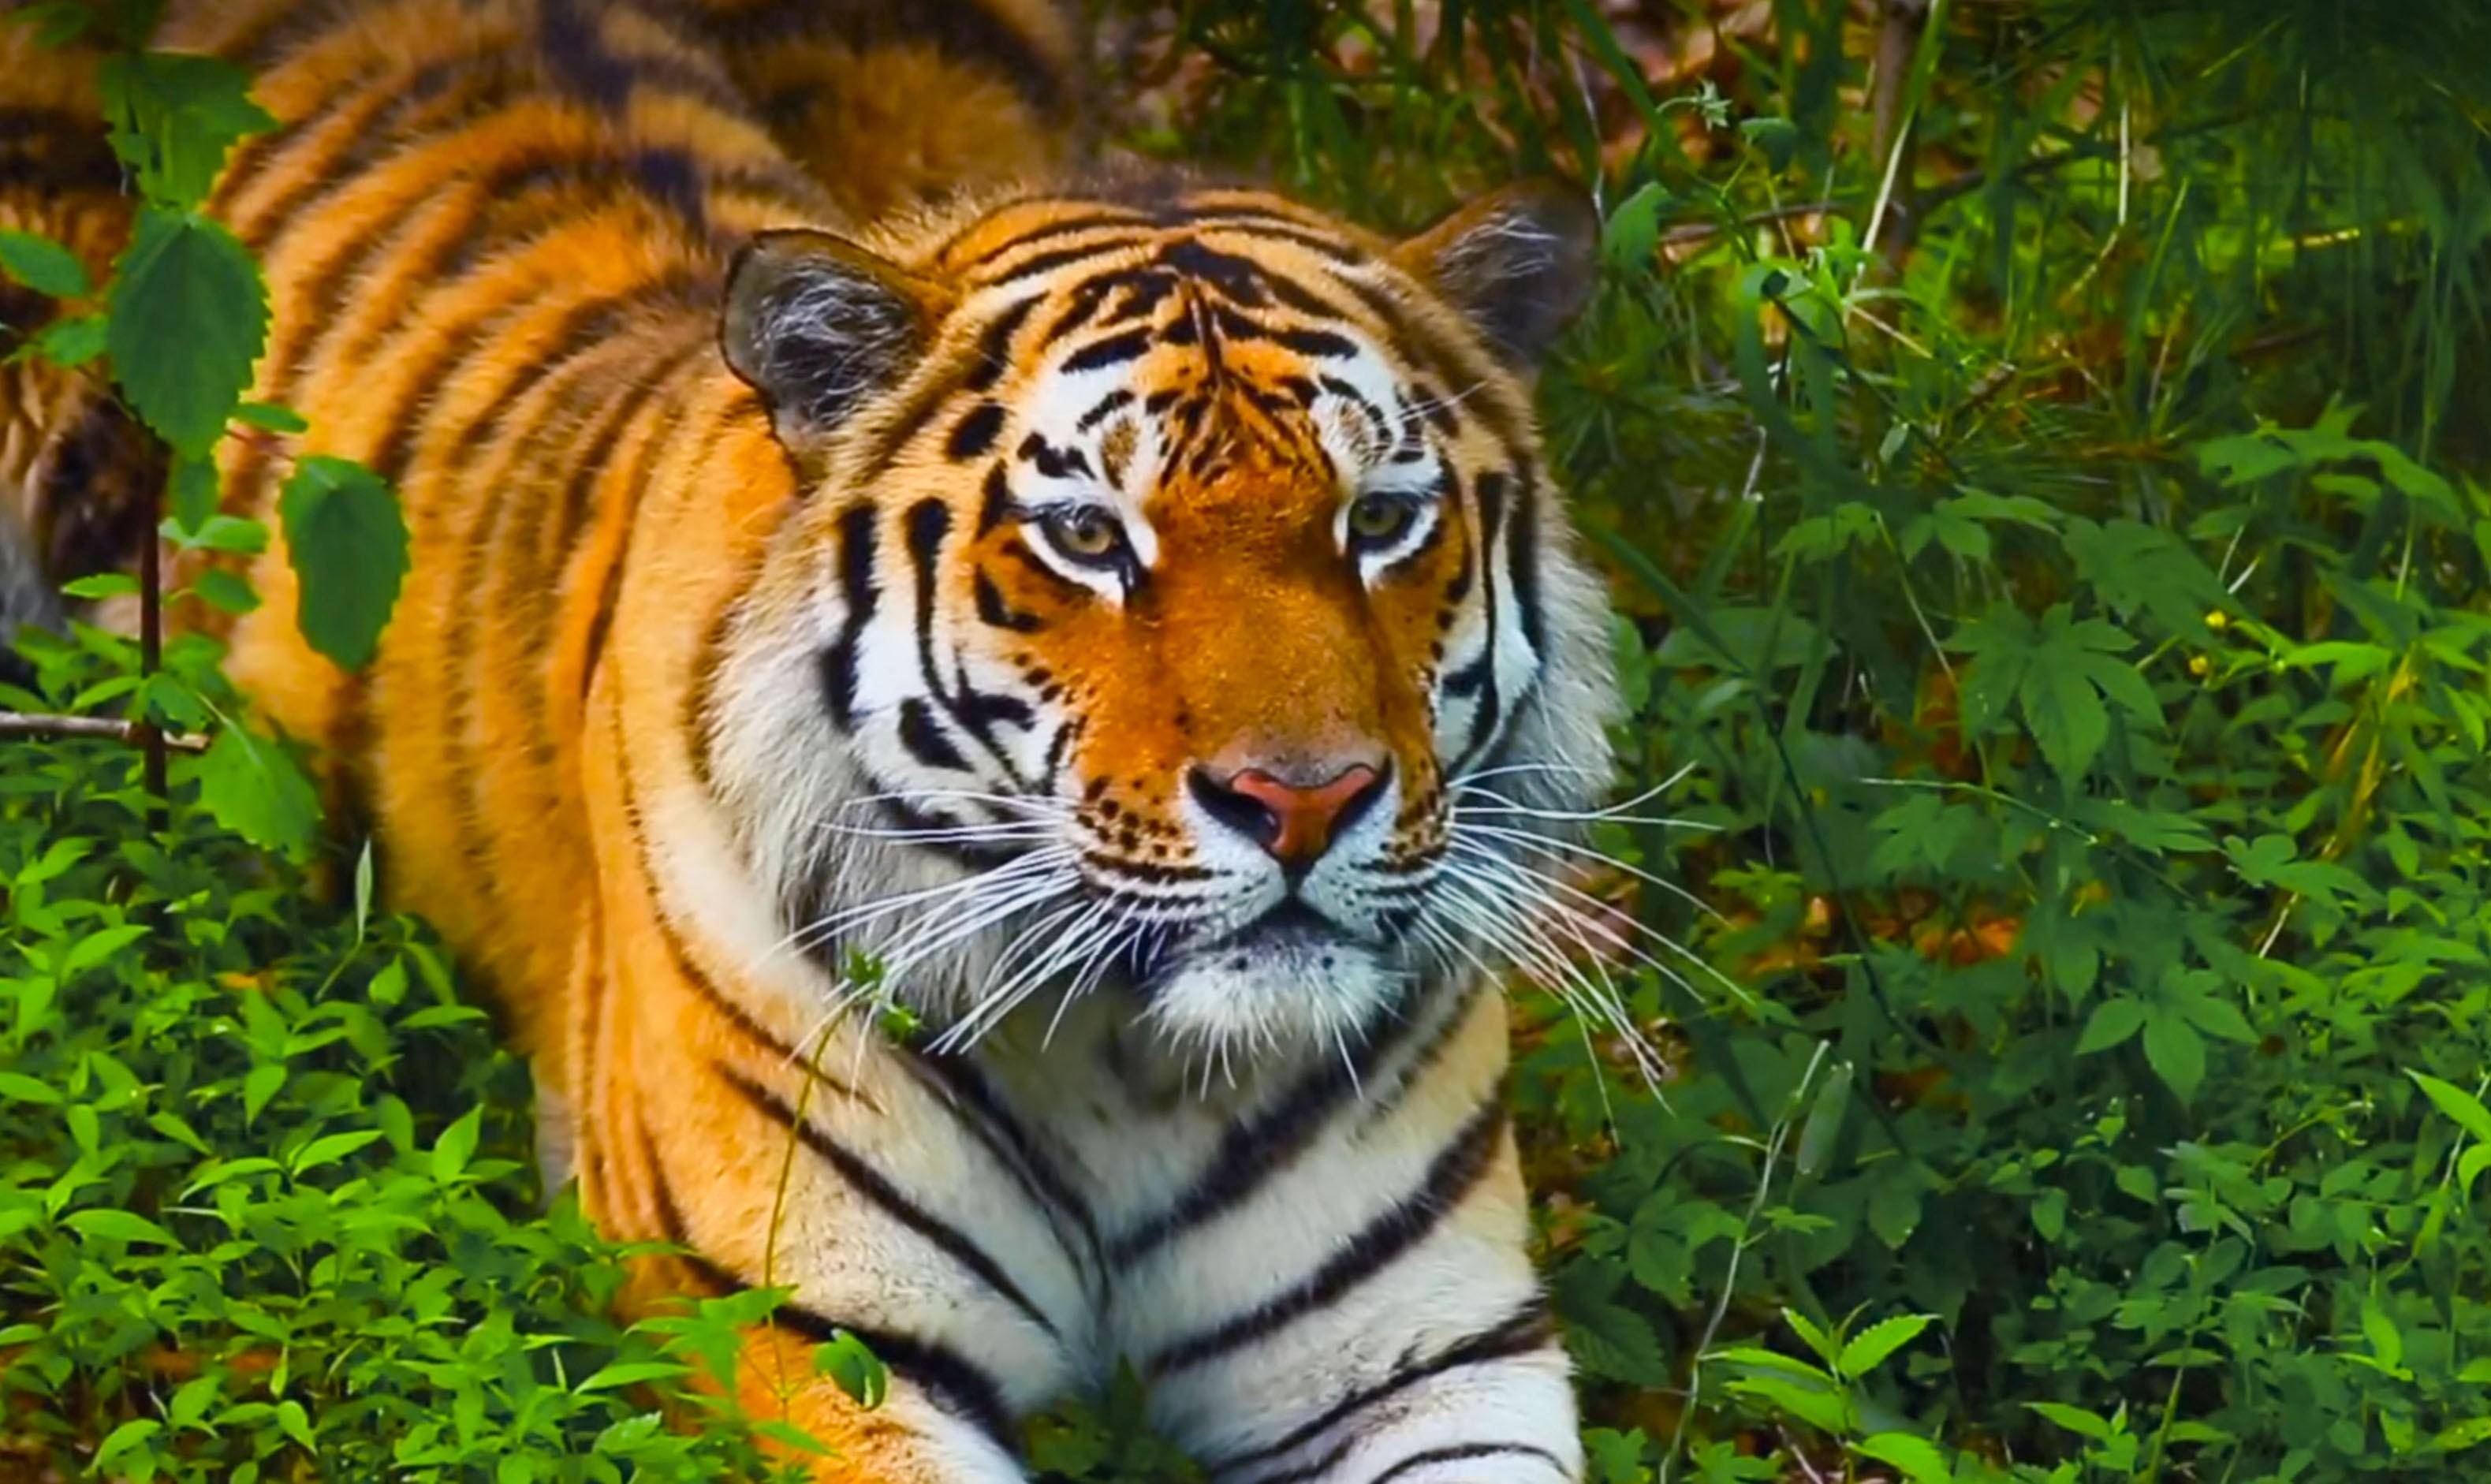 据监控画面显示,最初来的是一只大老虎,它一来就非常自在的躺在院门口